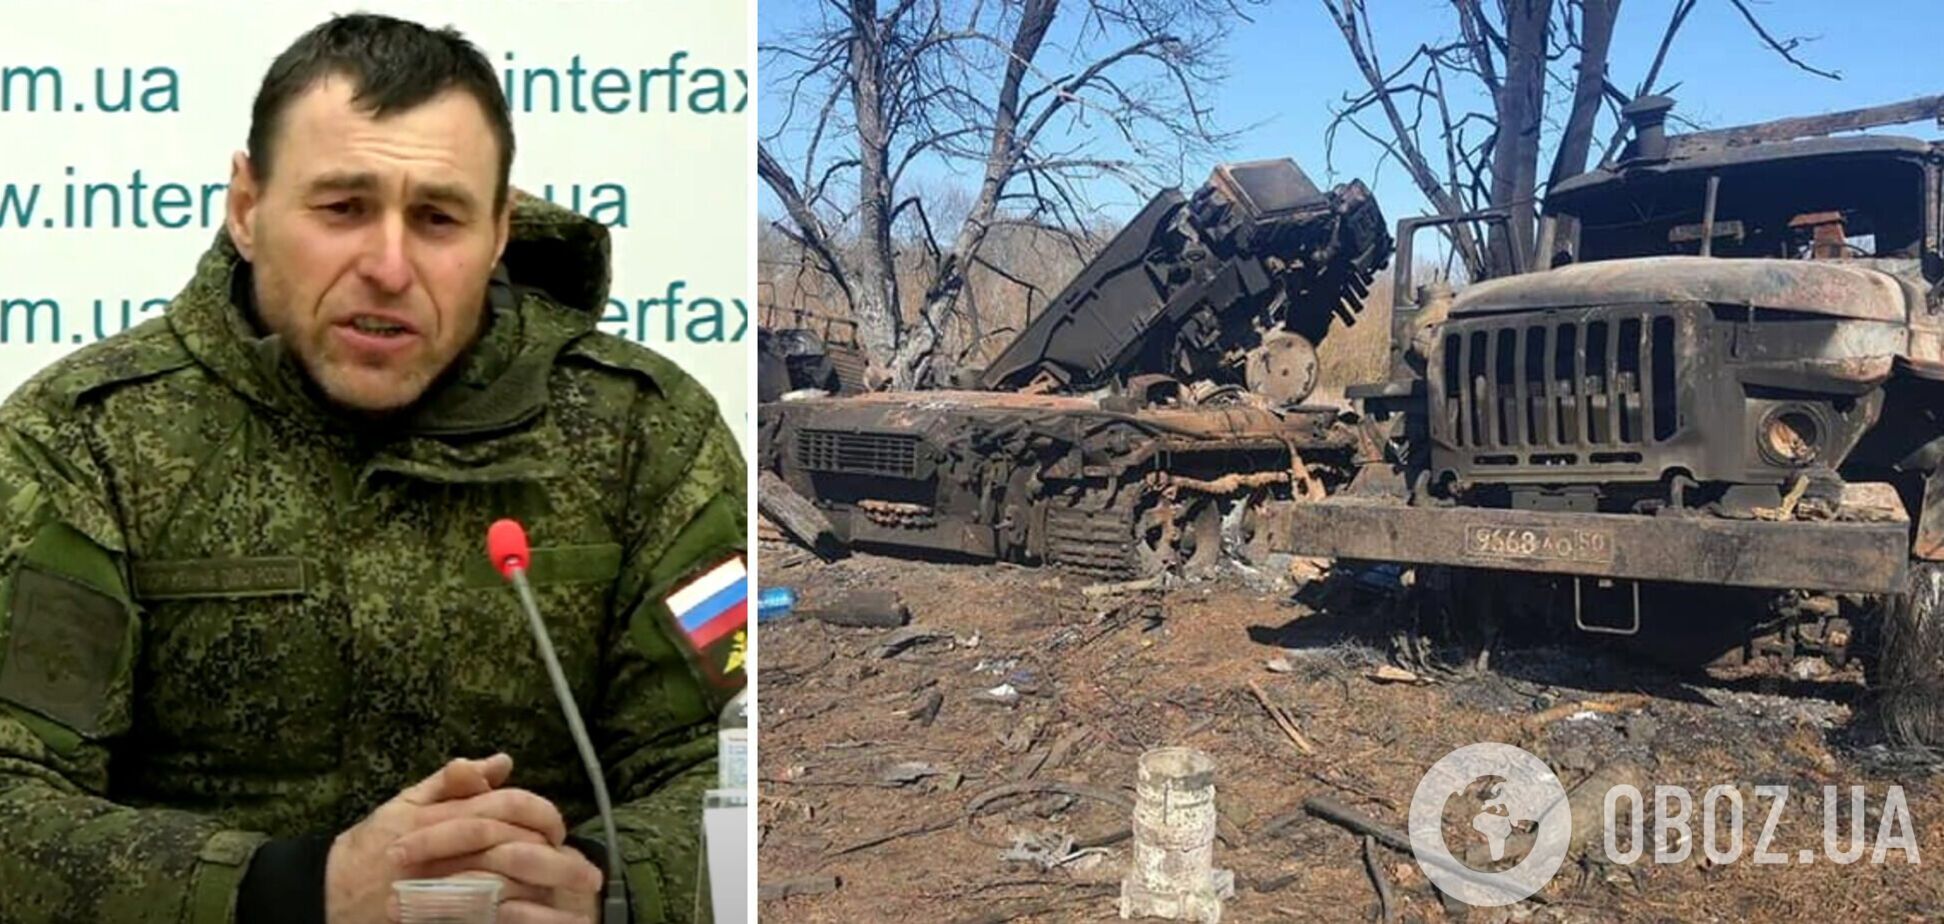 Игорь Руденко - украинец, который перешел на сторону РФ после оккупации Крыма